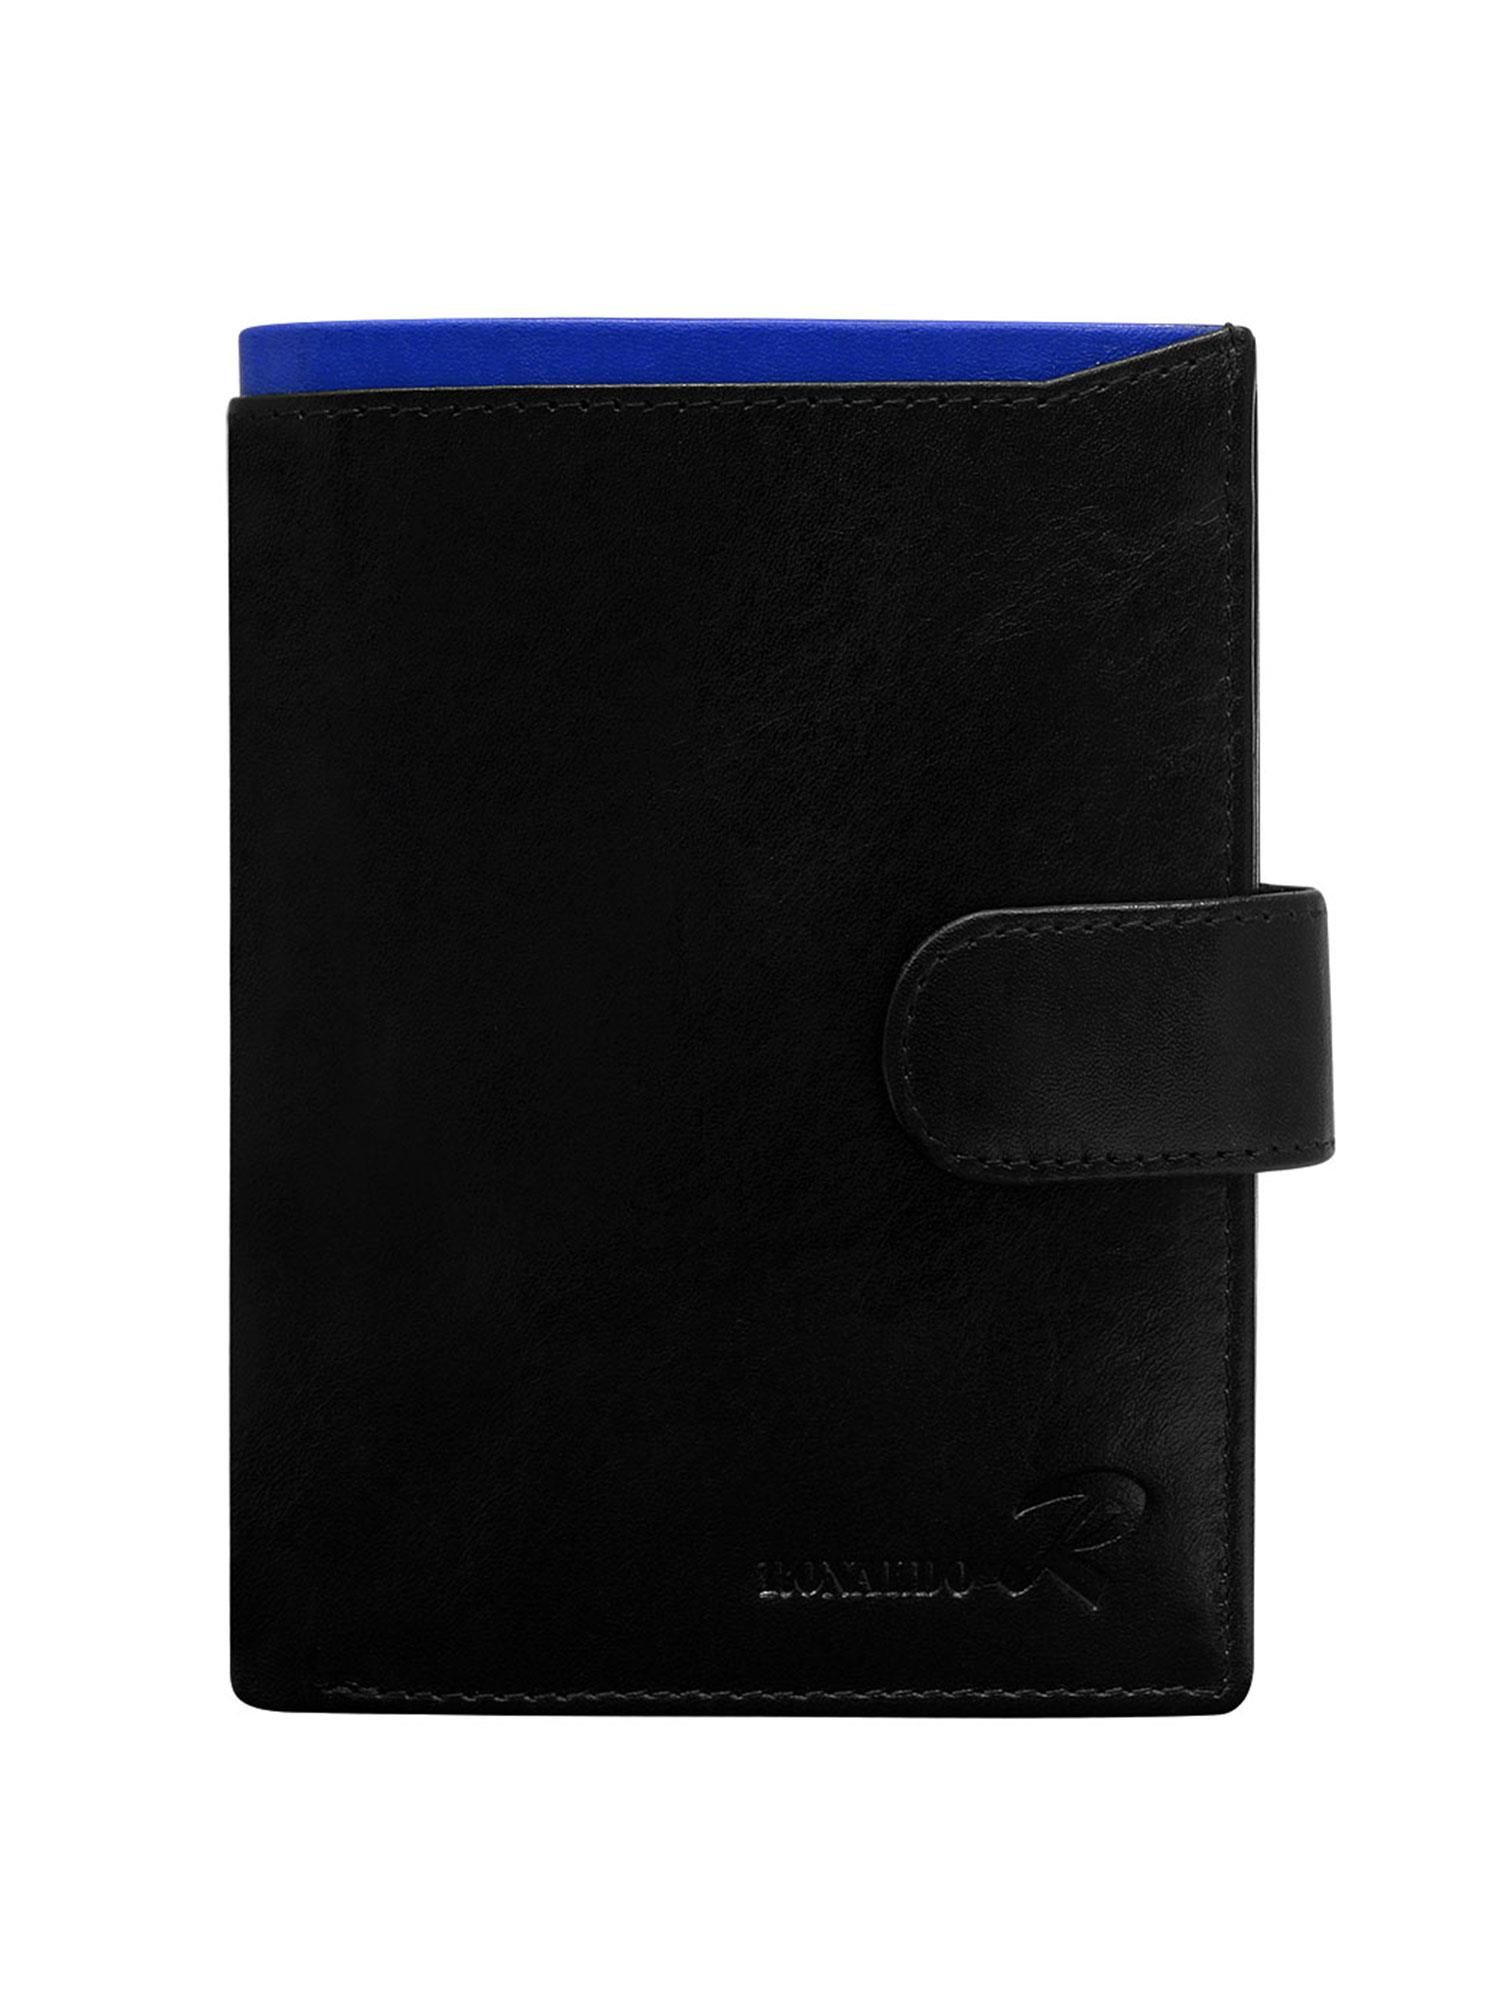 Peněženka CE PR N104L VT.89 černá a modrá jedna velikost